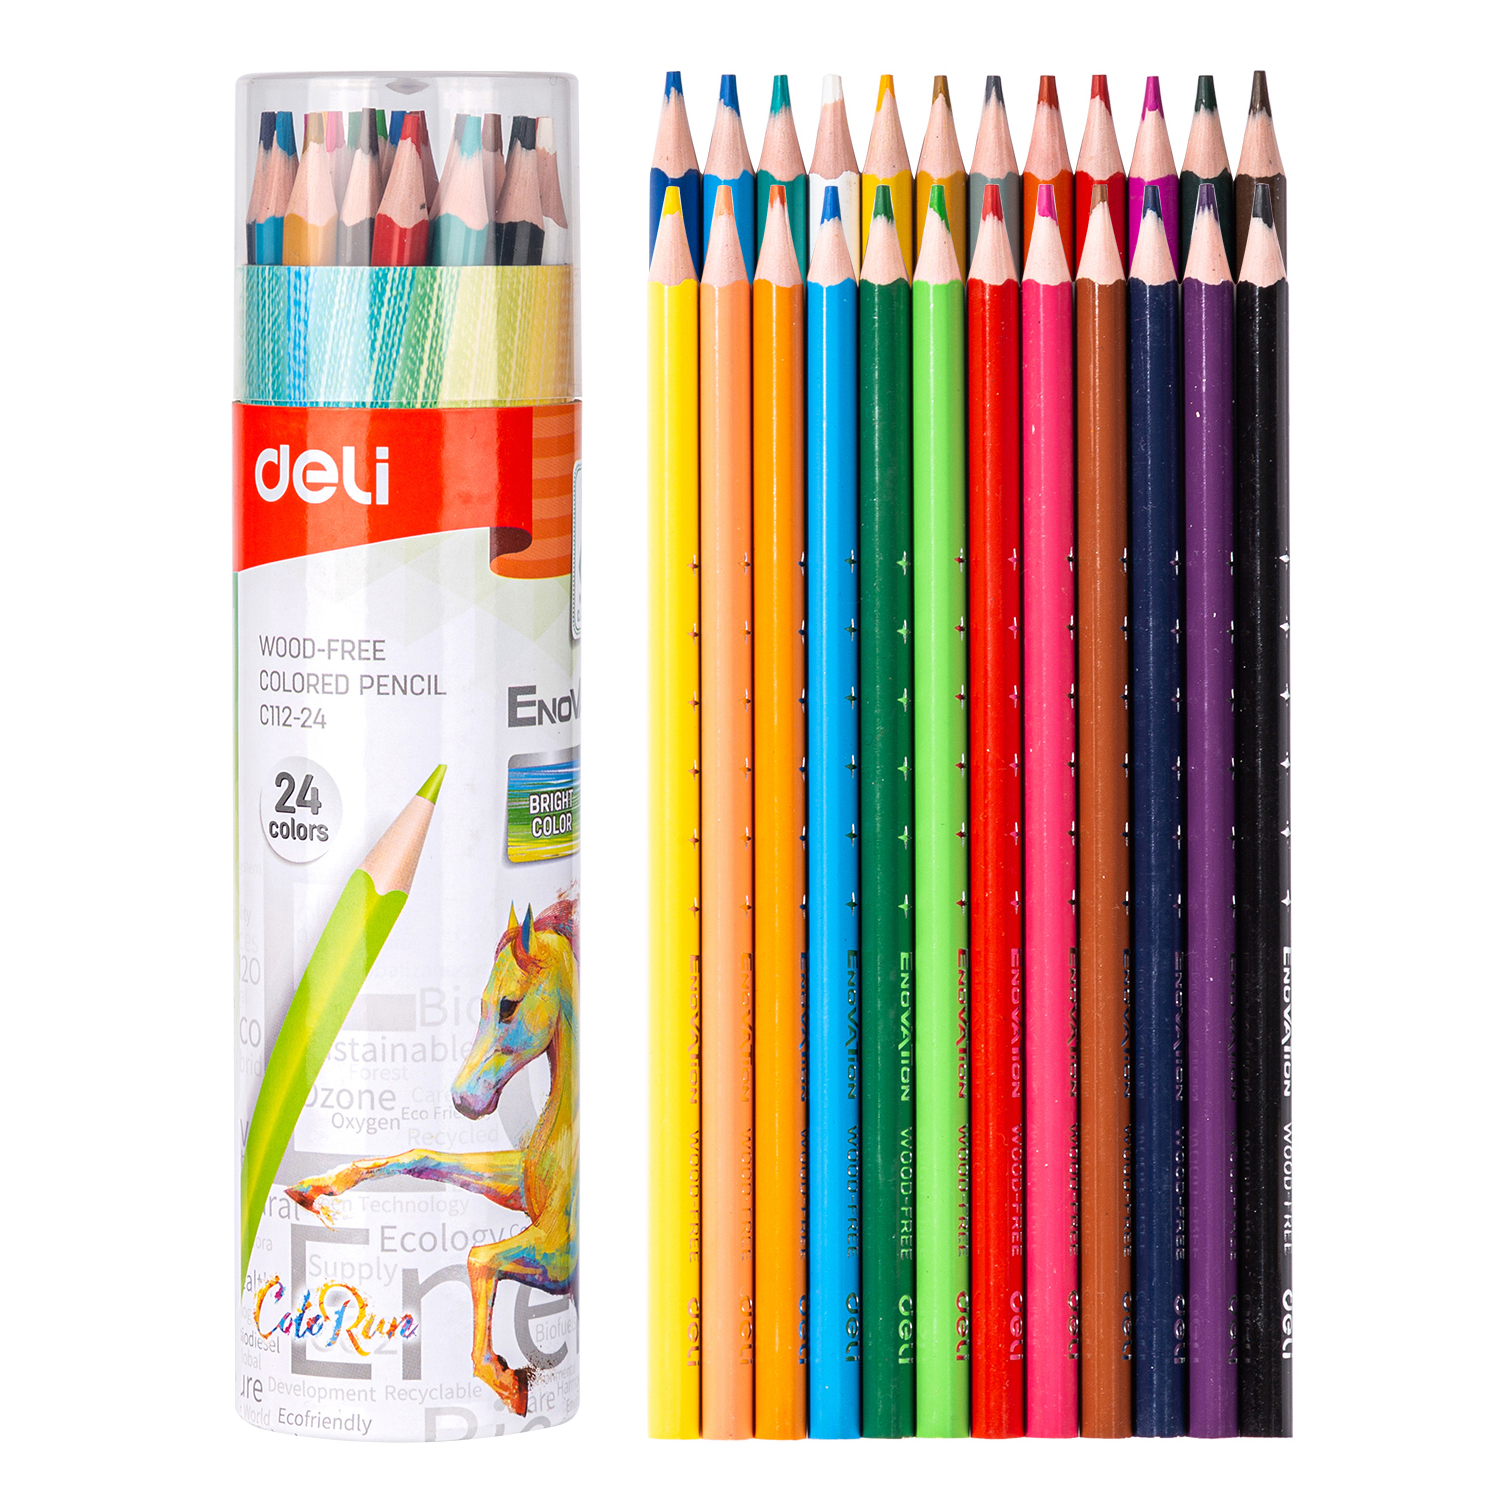 Deli-EC112-24 Colored Pencil